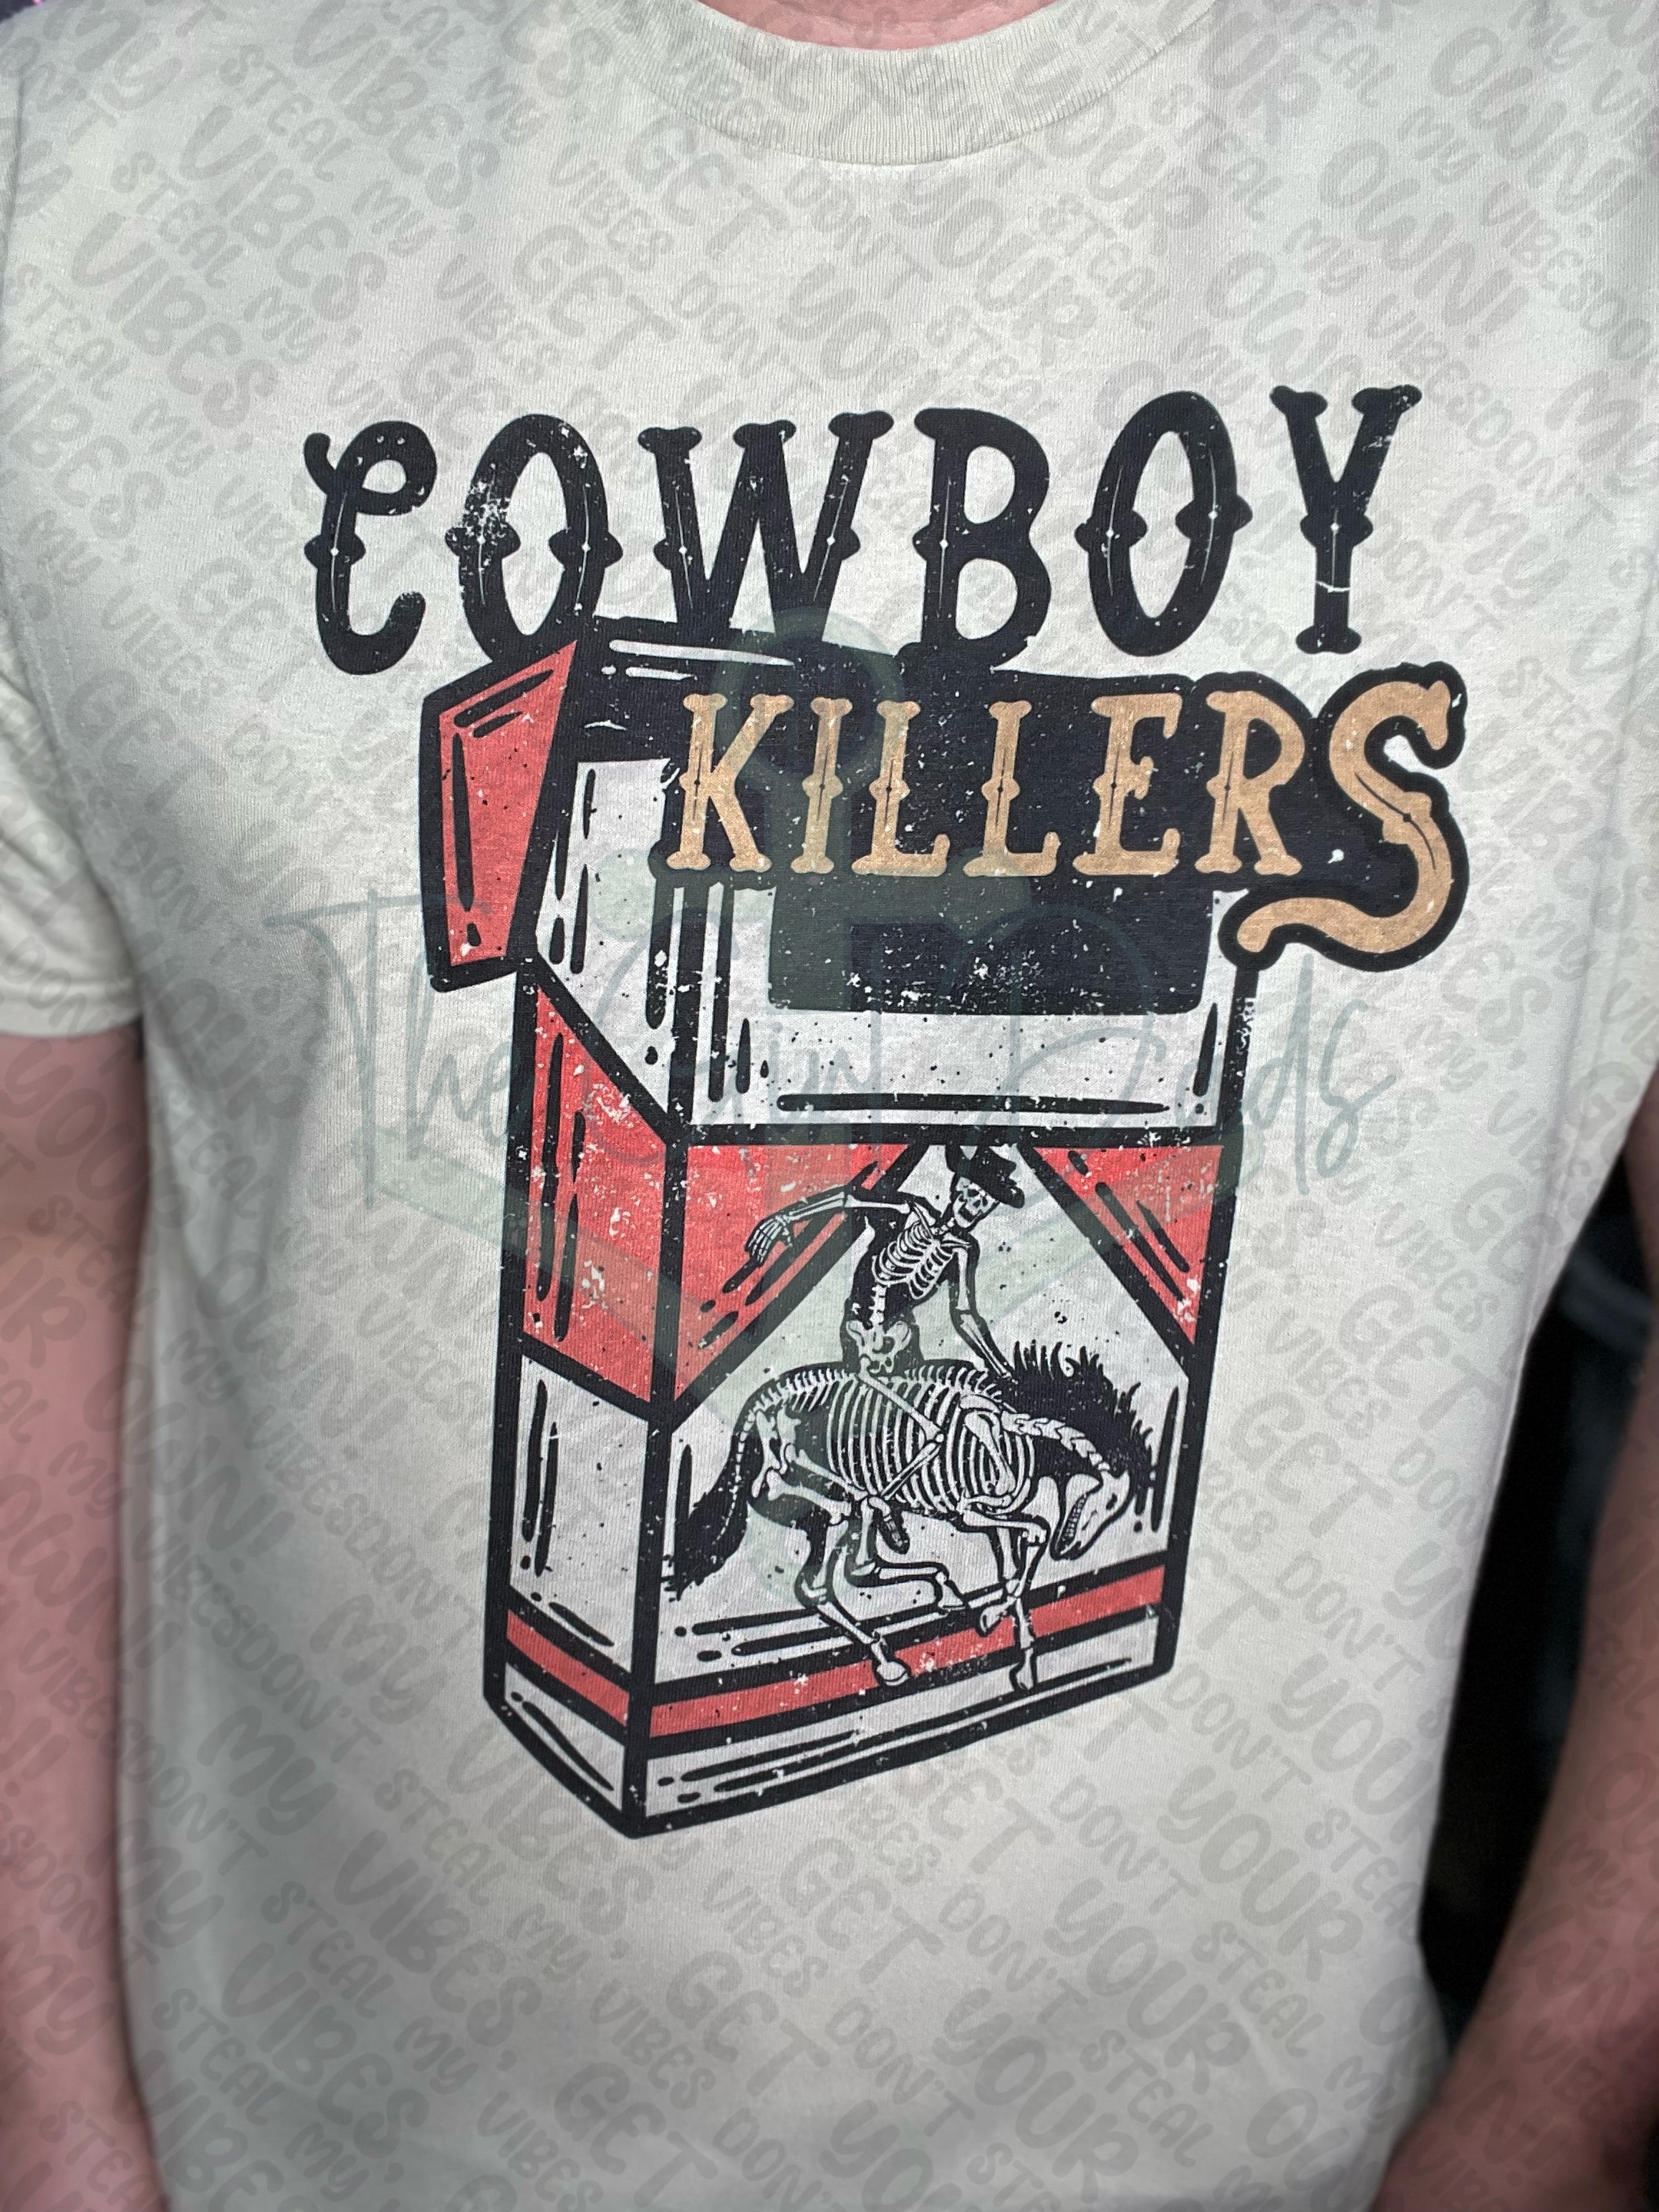 Cowboy Killers Top Design